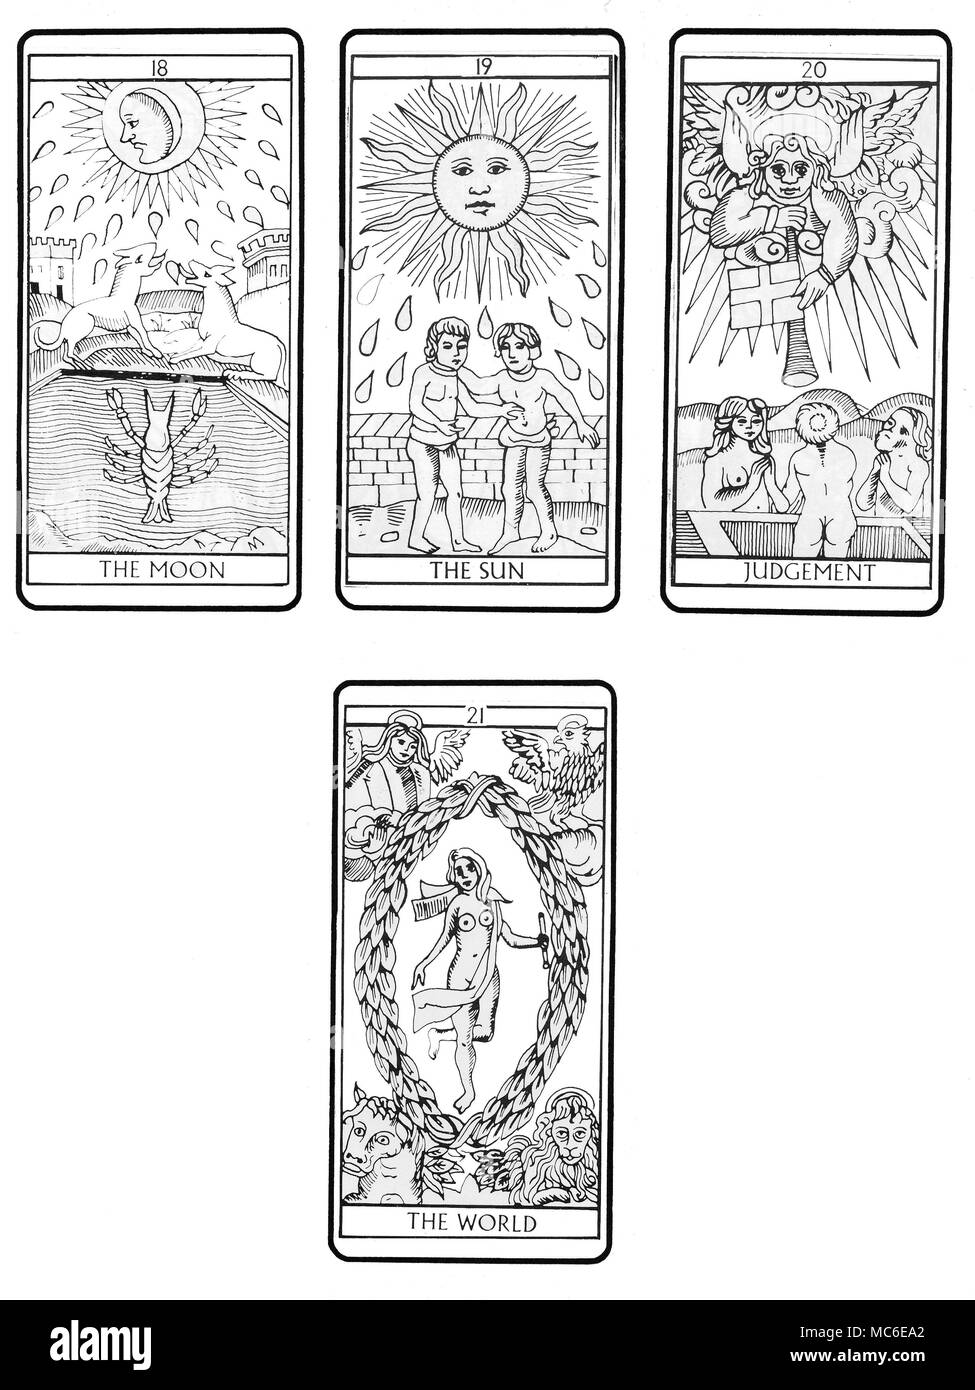 TAROT DE MARSELLA - cubierta en el cuarto y último lote (de cuatro) en la  secuencia de 22 cartas del Tarot (según el tradicional diseño de Marsella),  desde el 18º tarjeta (la